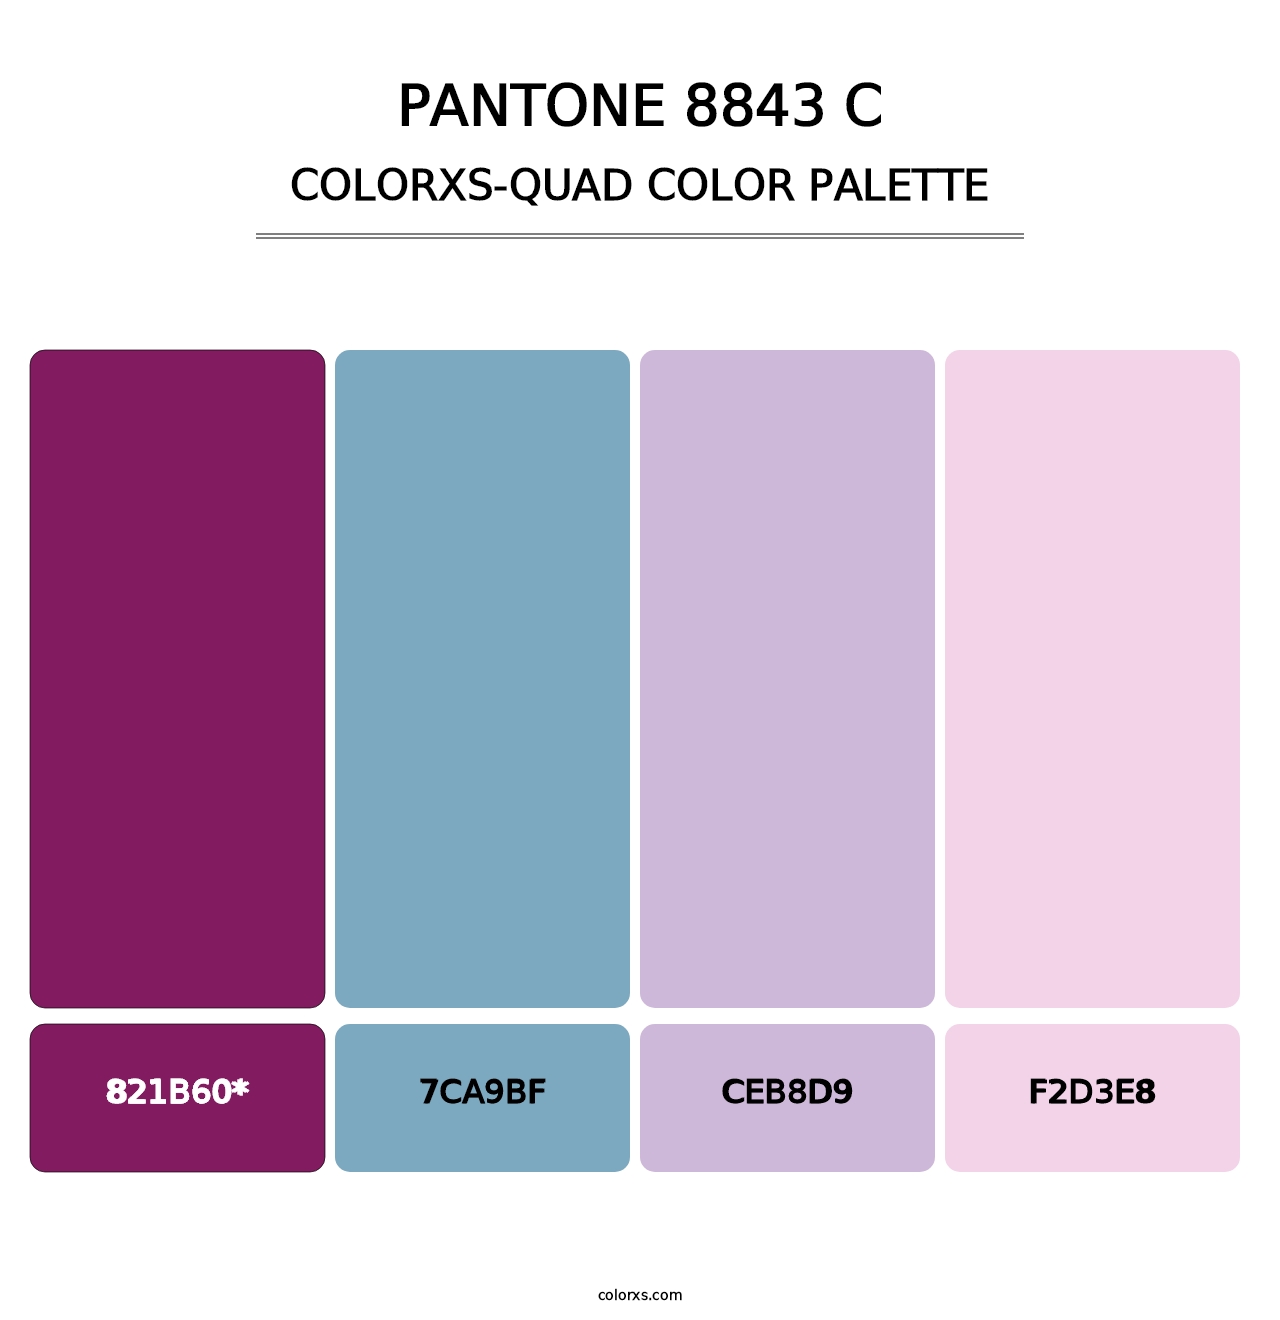 PANTONE 8843 C - Colorxs Quad Palette